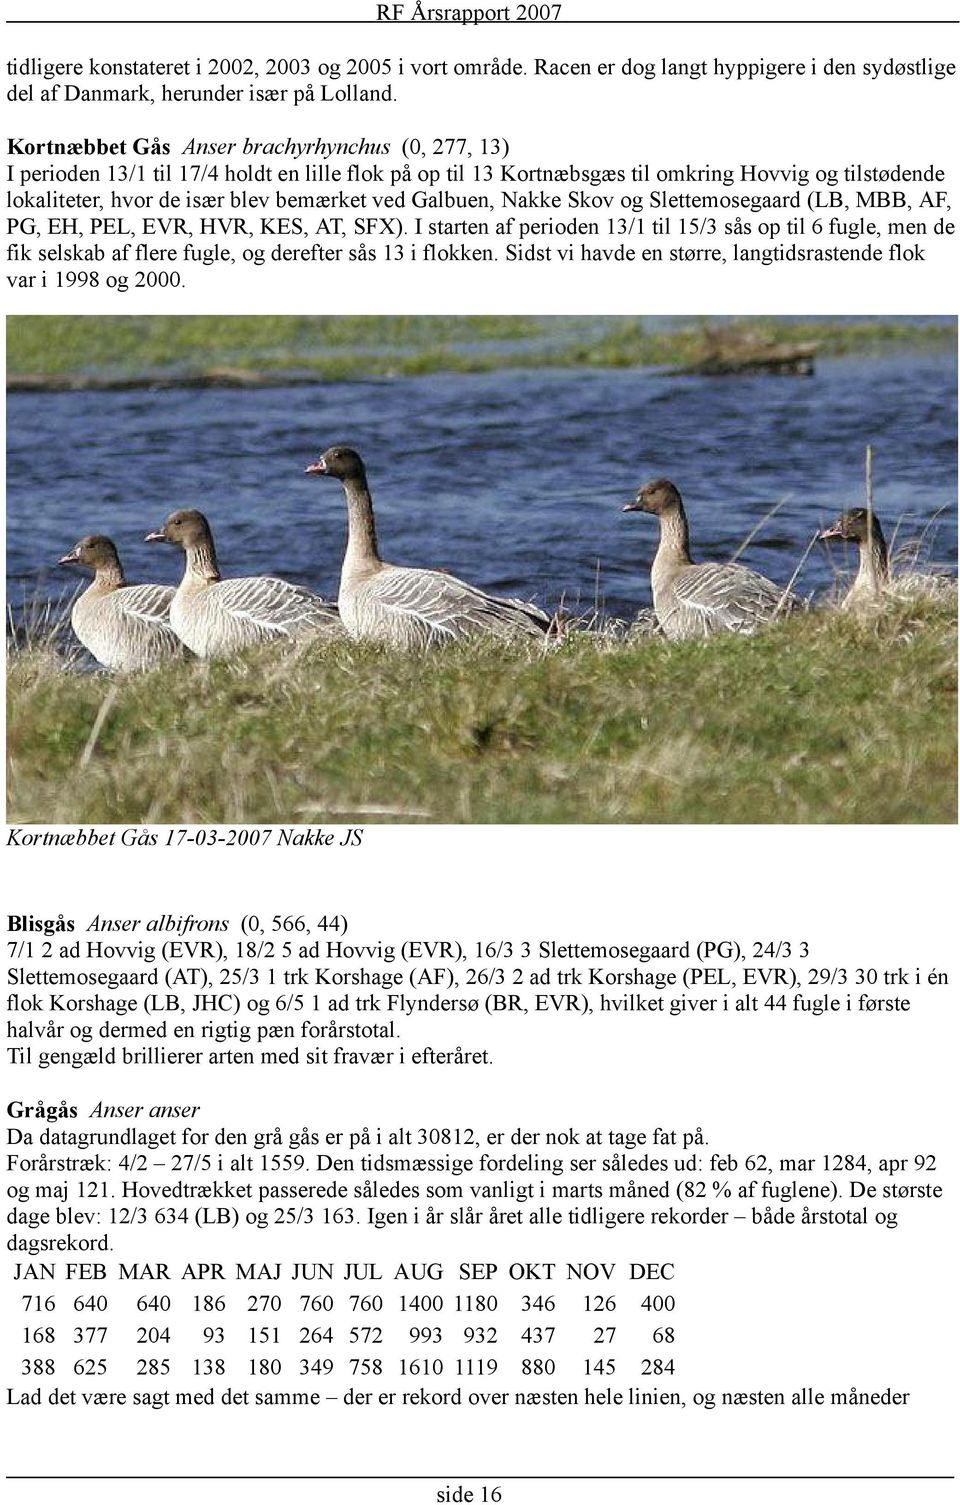 Skov og Slettemosegaard (LB, MBB, AF, PG, EH, PEL, EVR, HVR, KES, AT, SFX). I starten af perioden / til / sås op til fugle, men de fik selskab af flere fugle, og derefter sås i flokken.